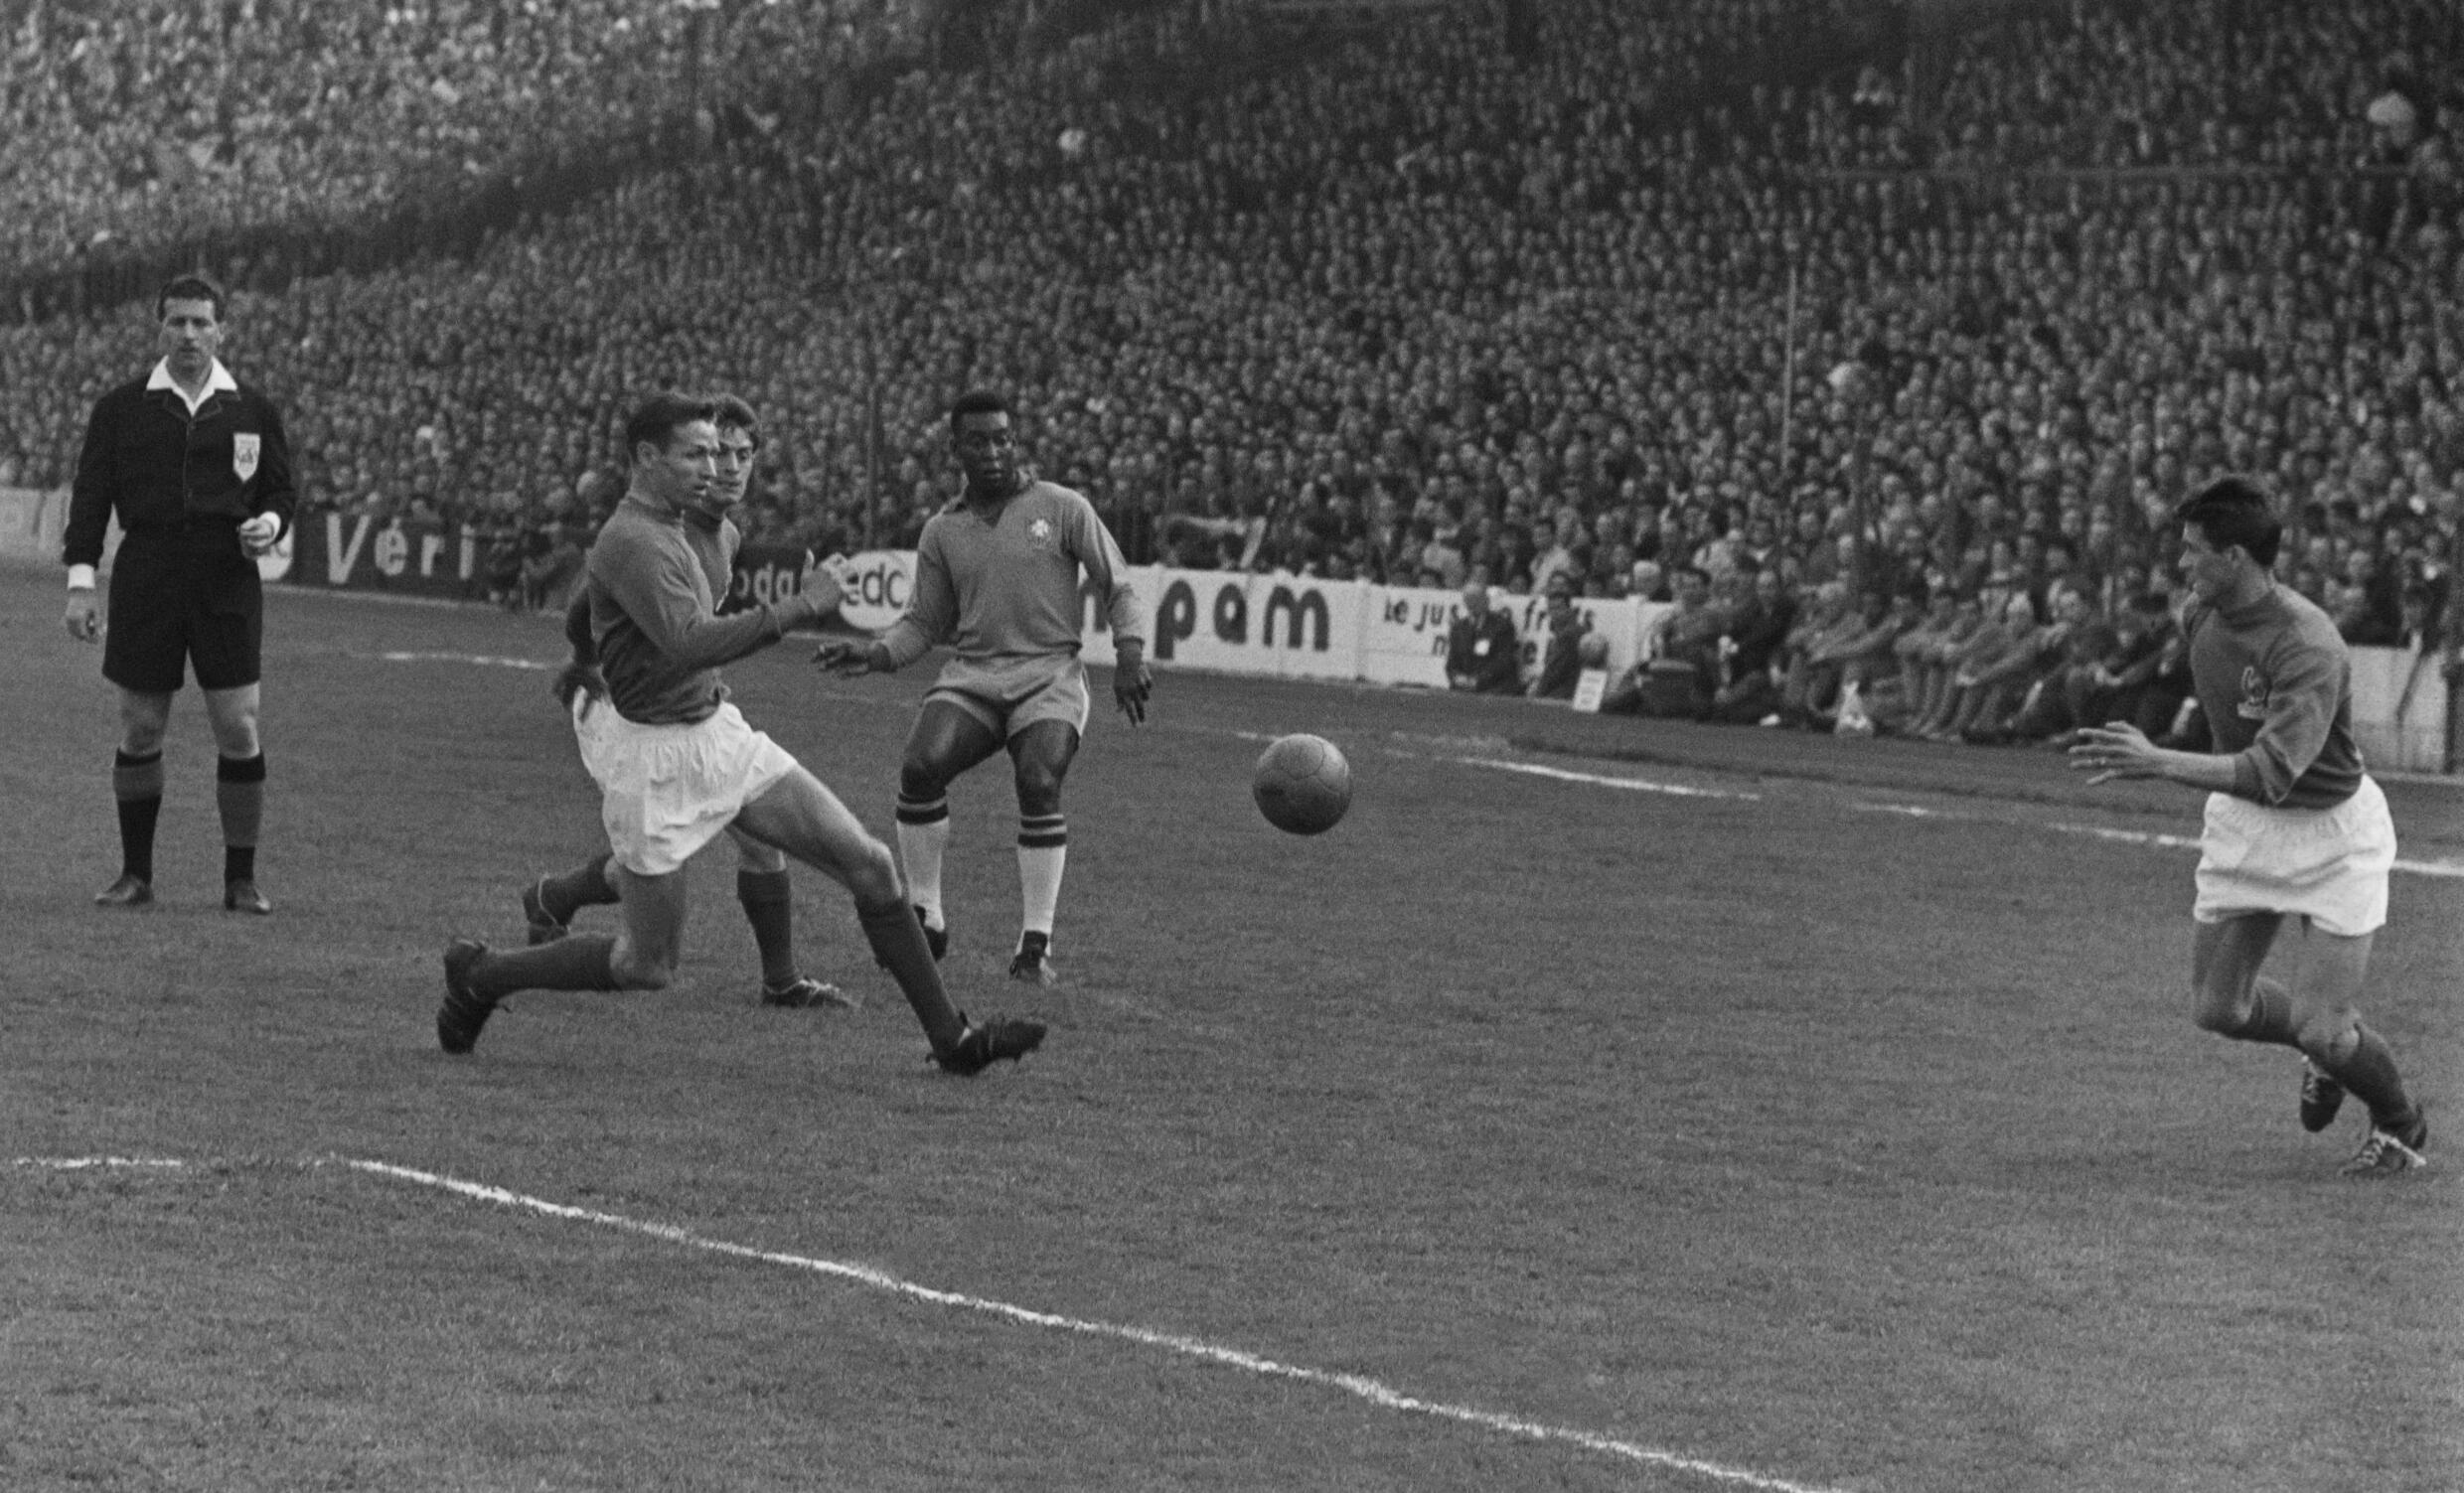 El futbolista brasileño Pelé, en el centro, está rodeado por tres jugadores franceses el 28 de abril de 1963 en Colombes.  Pelé anotó los 3 goles de su equipo cuando Brasil venció a Francia 3-2.